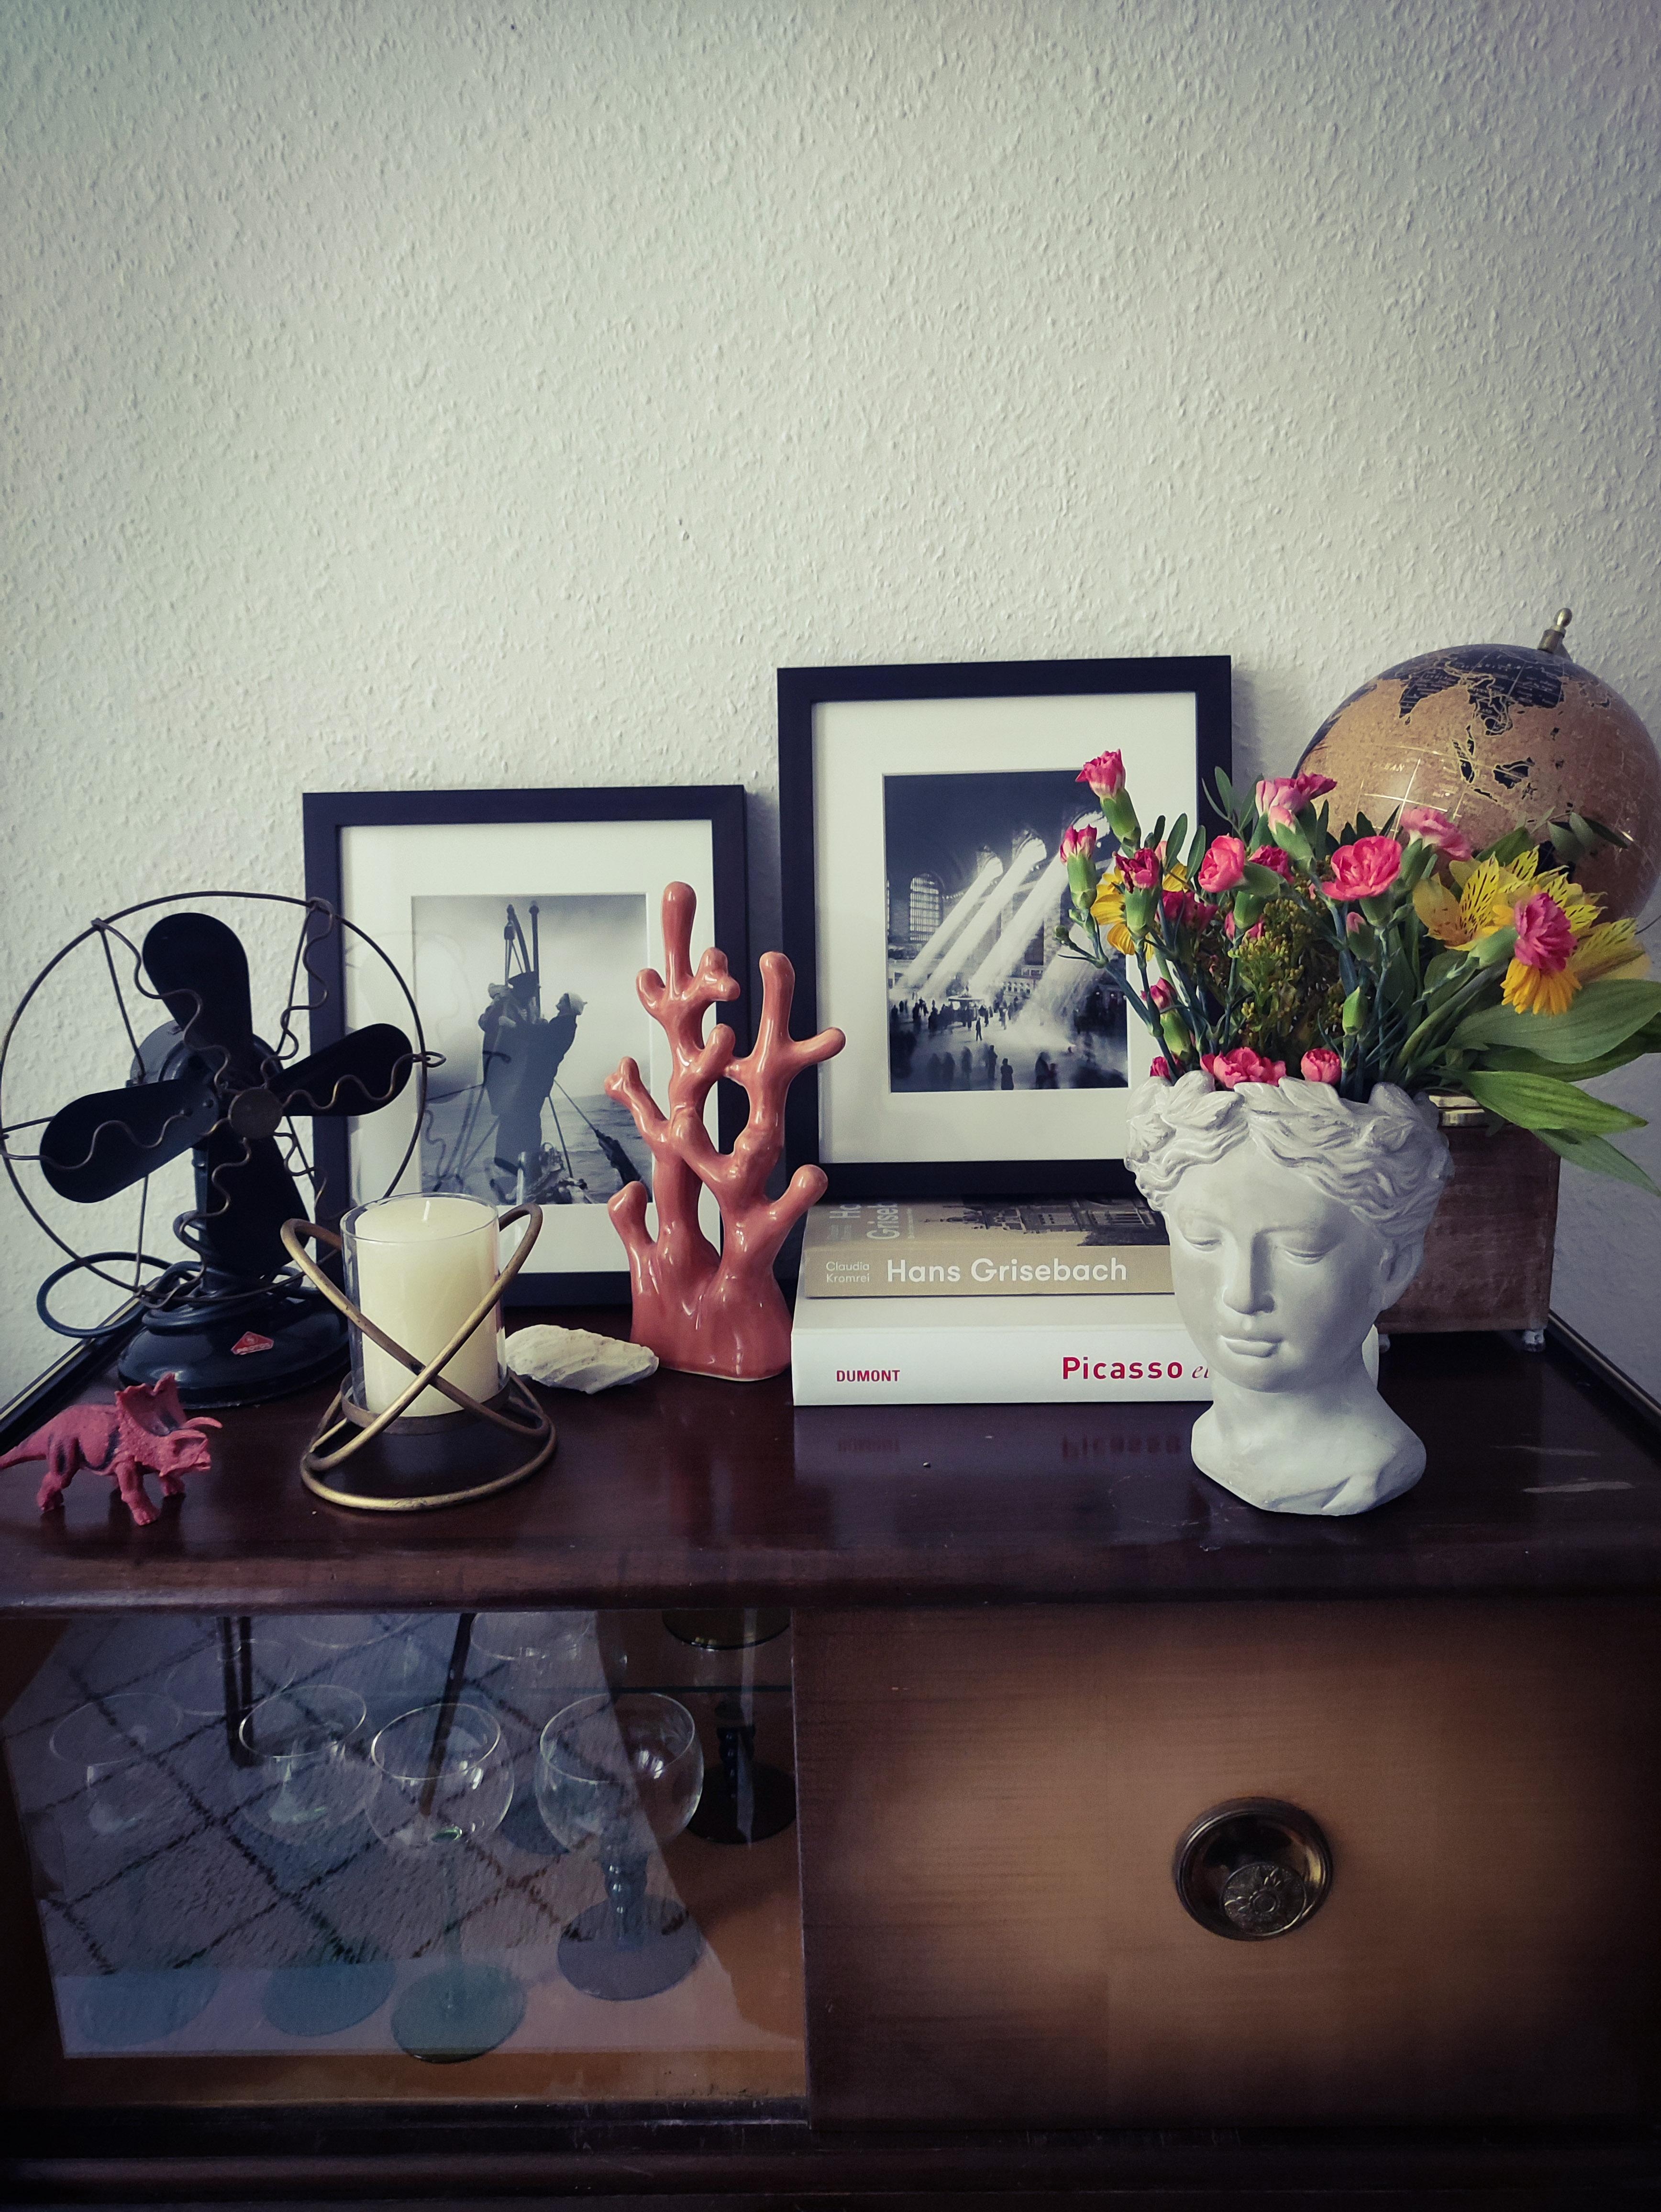 #Sideboard-Deko im #Vintage-Stil.

#art #flower #schwarzweiß #fotografie